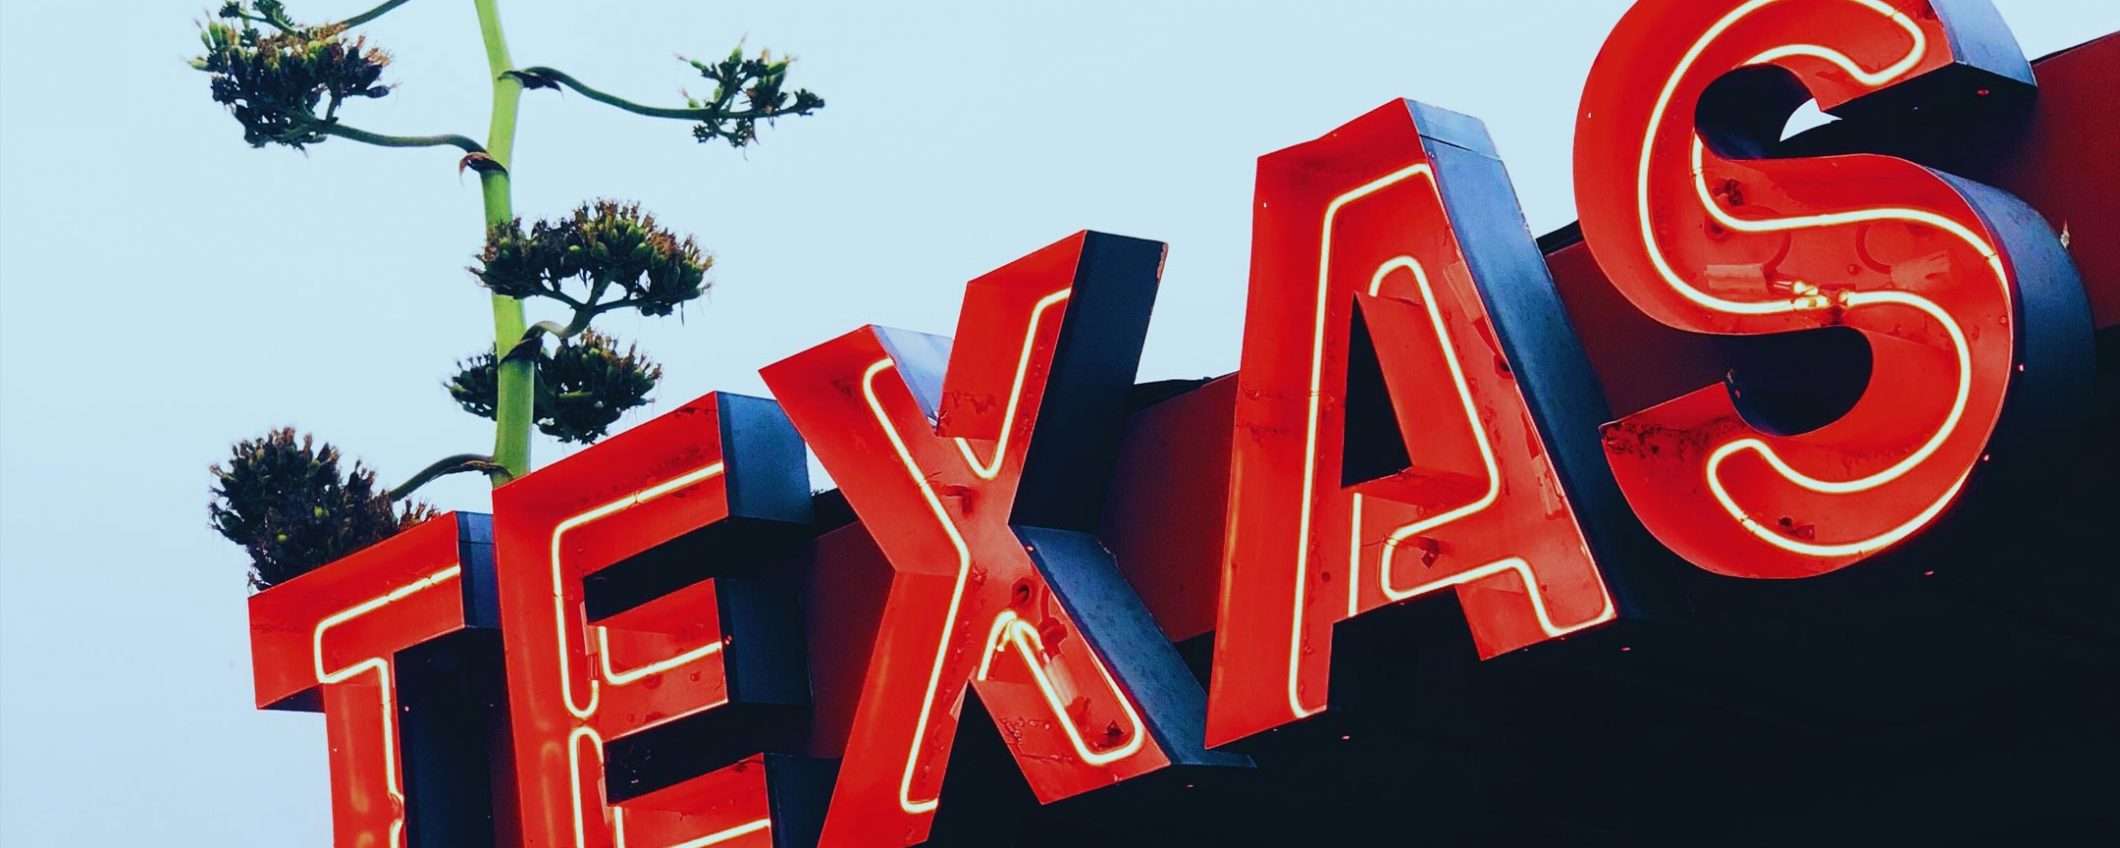 Attacco ransomware al Texas: riscatto milionario